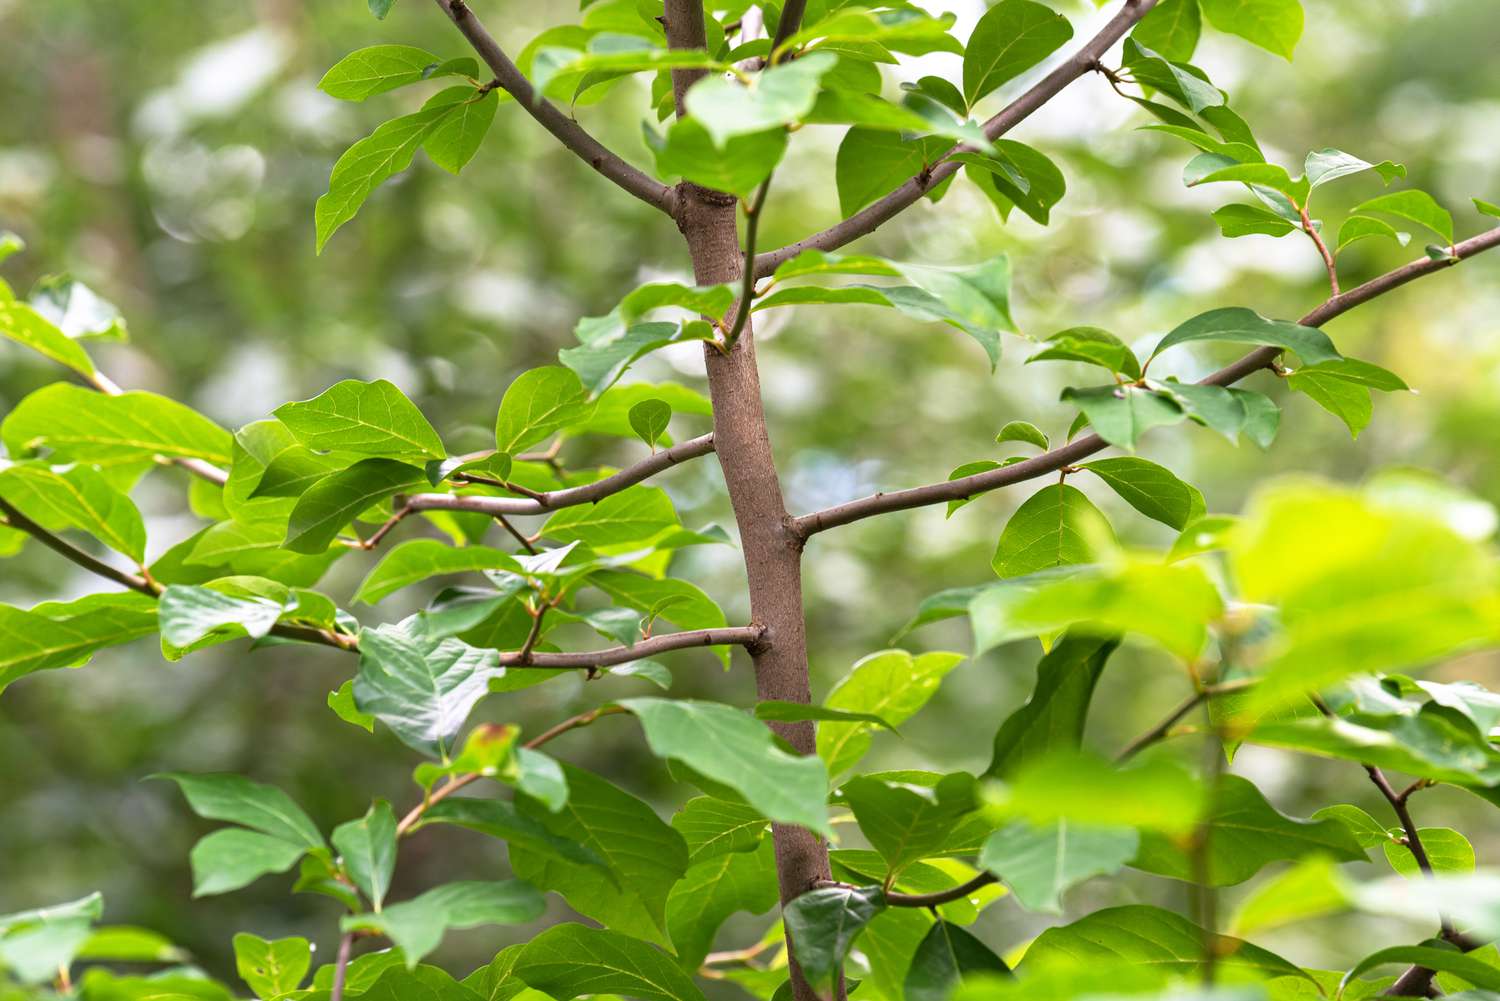 Primer plano de árbol de eucalipto negro con tronco delgado de color marrón claro y hojas verdes brillantes